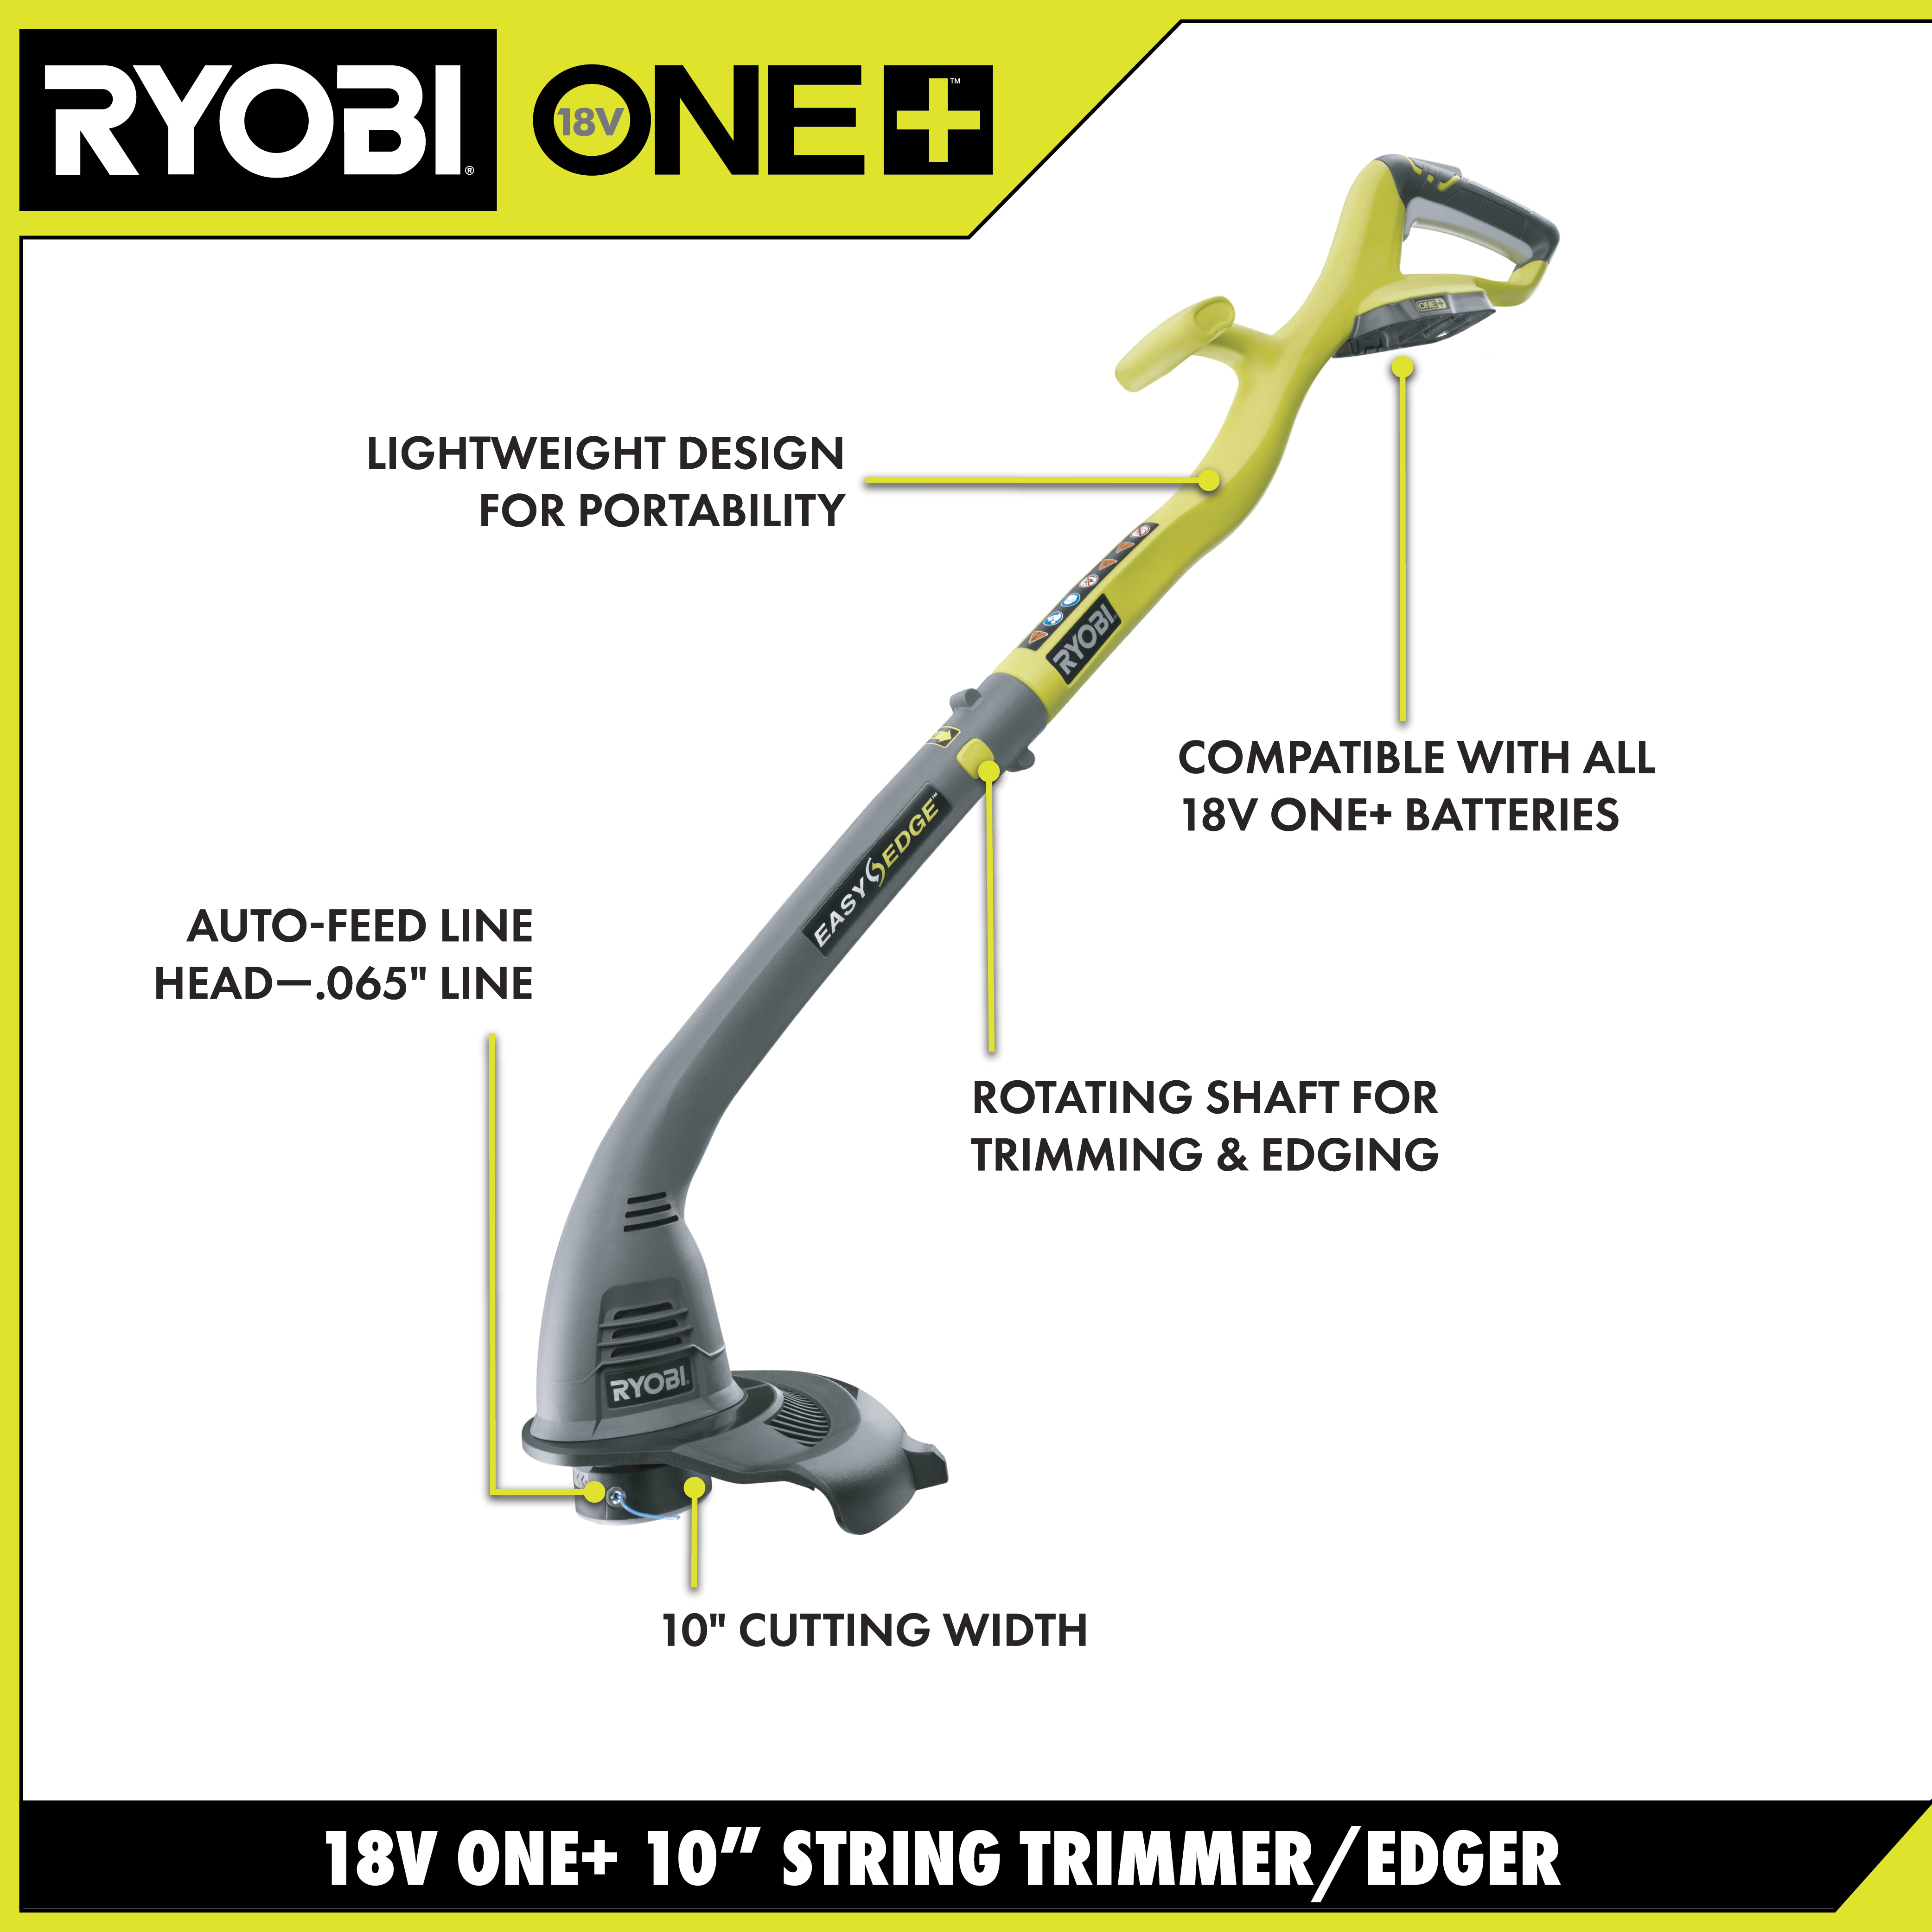 Ryobi 18V ONE+ Cordless 25cm Grass Trimmer Review